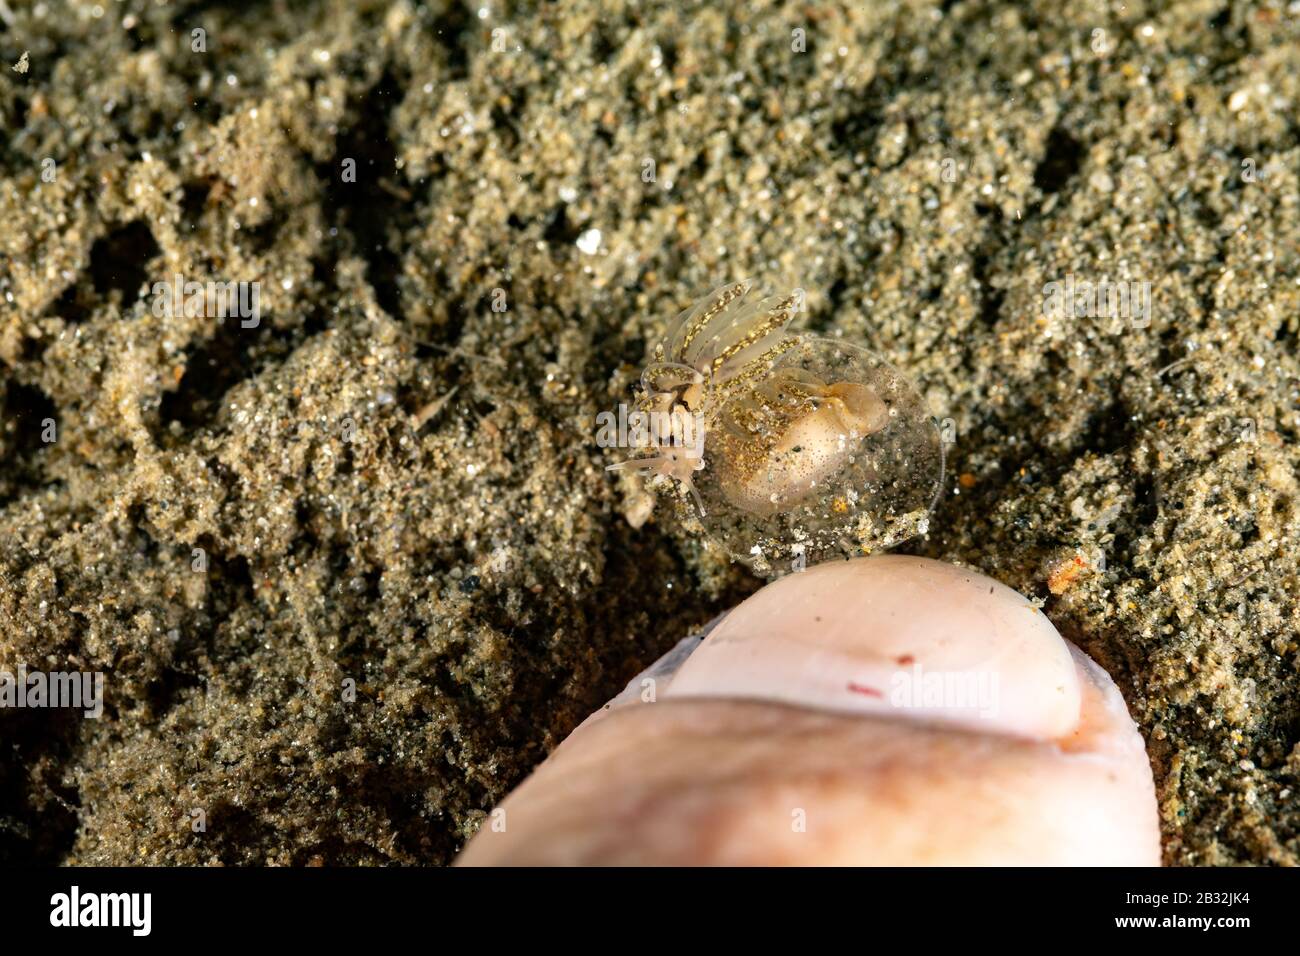 La plus belle de l'escargots sous l'océan Pacifique et Indien Banque D'Images